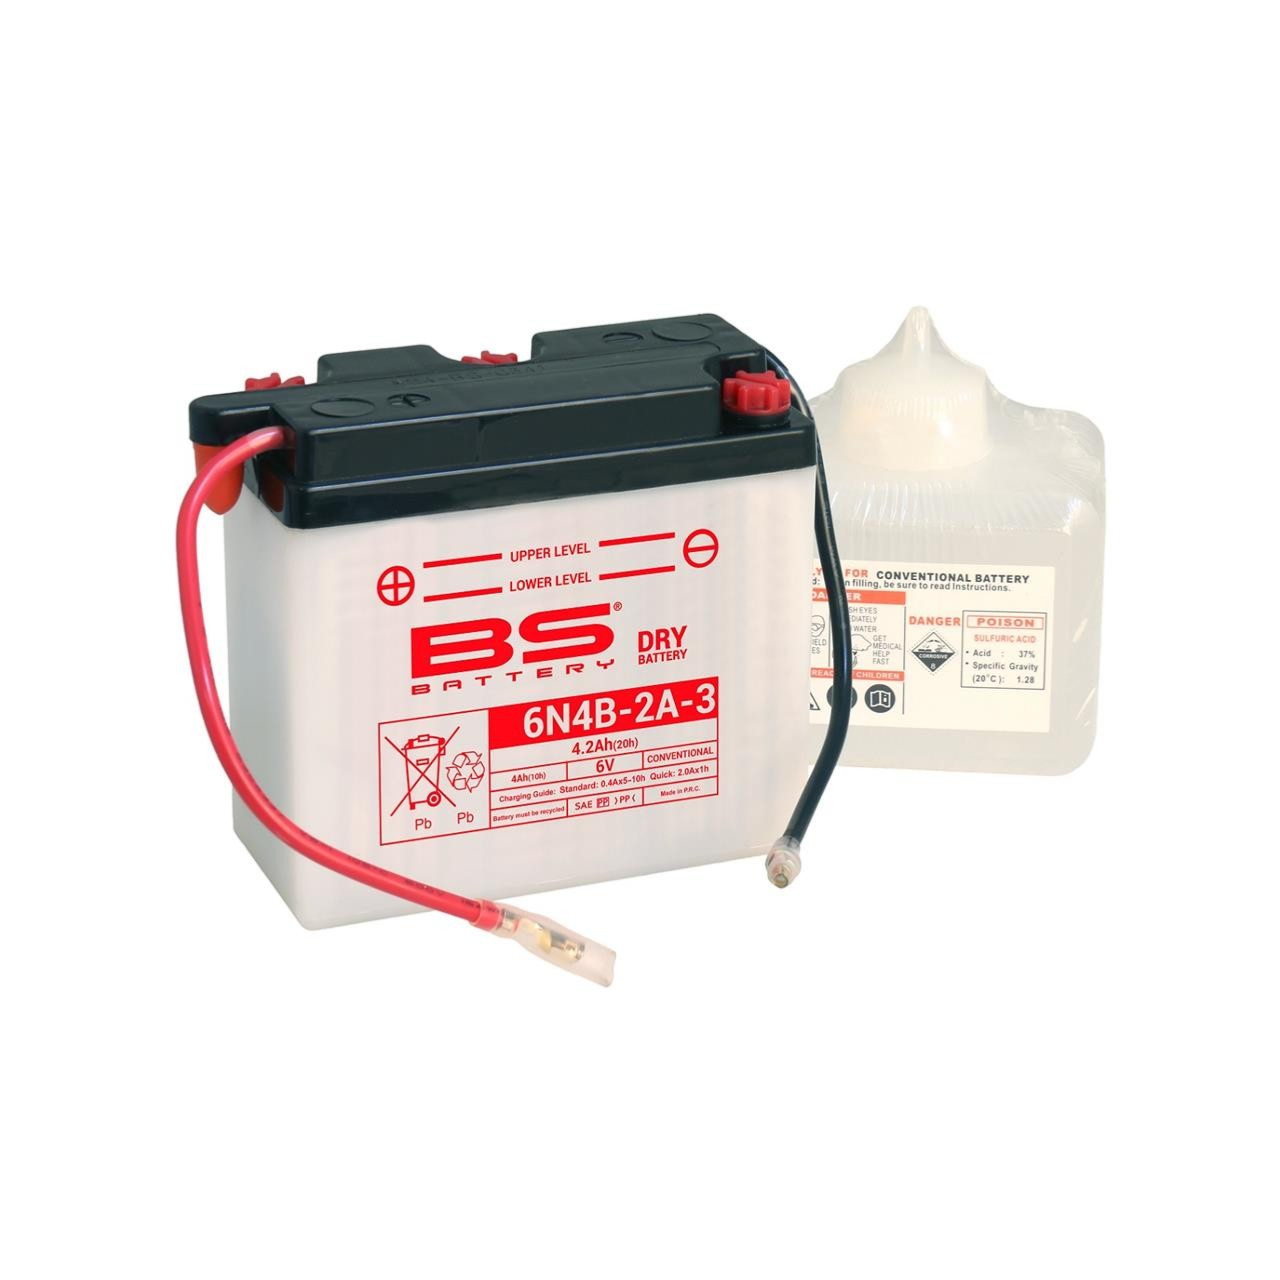 Batterie moto BS Battery 6N4B-2A-3 6V 4.2Ah +G. Garantie 6 mois